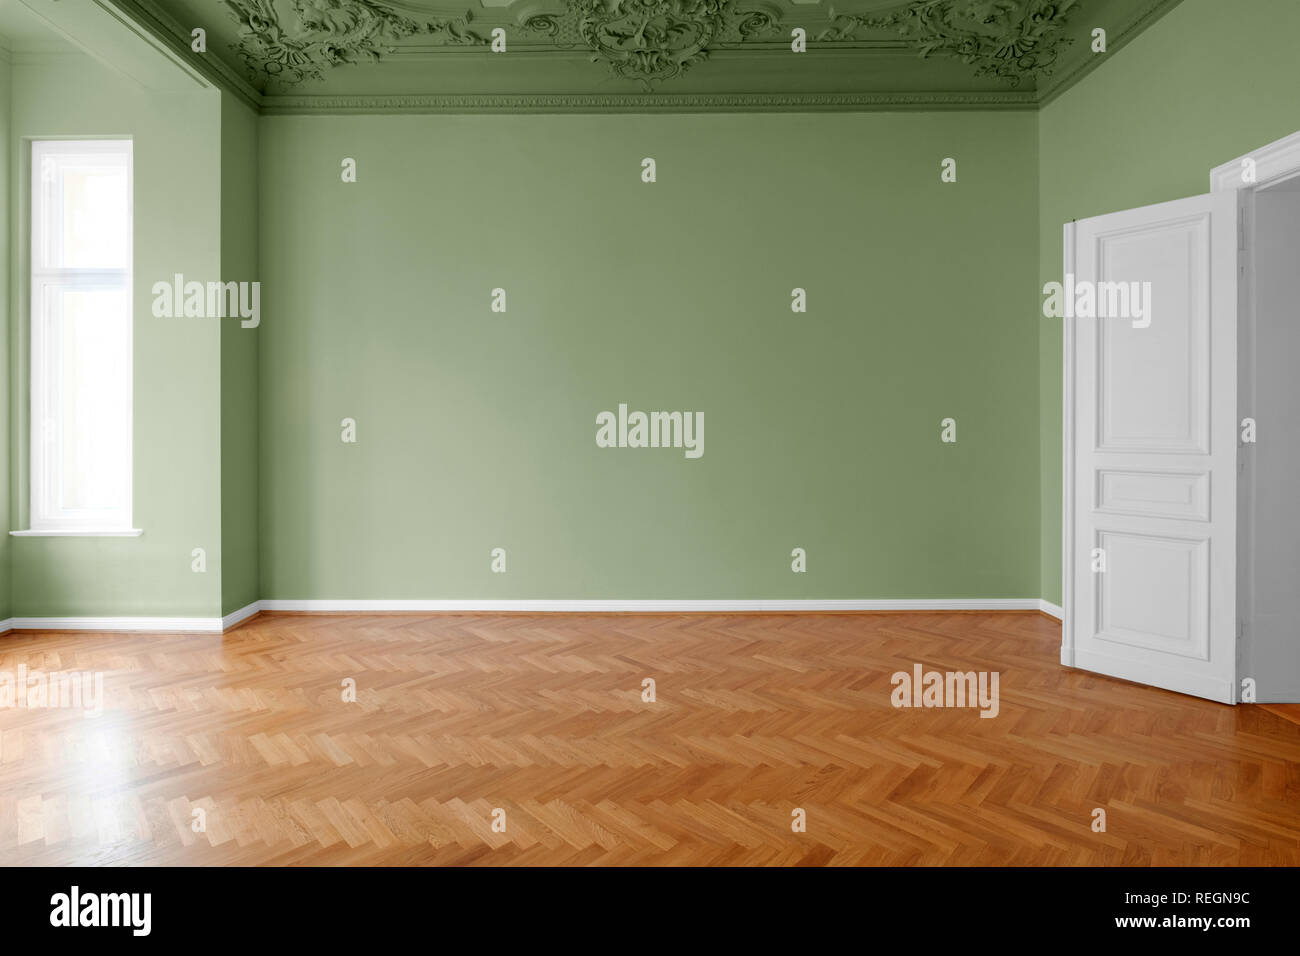 Leeren Raum mit grün gestrichenen Wänden, Home Renovierung Konzept Stockfoto